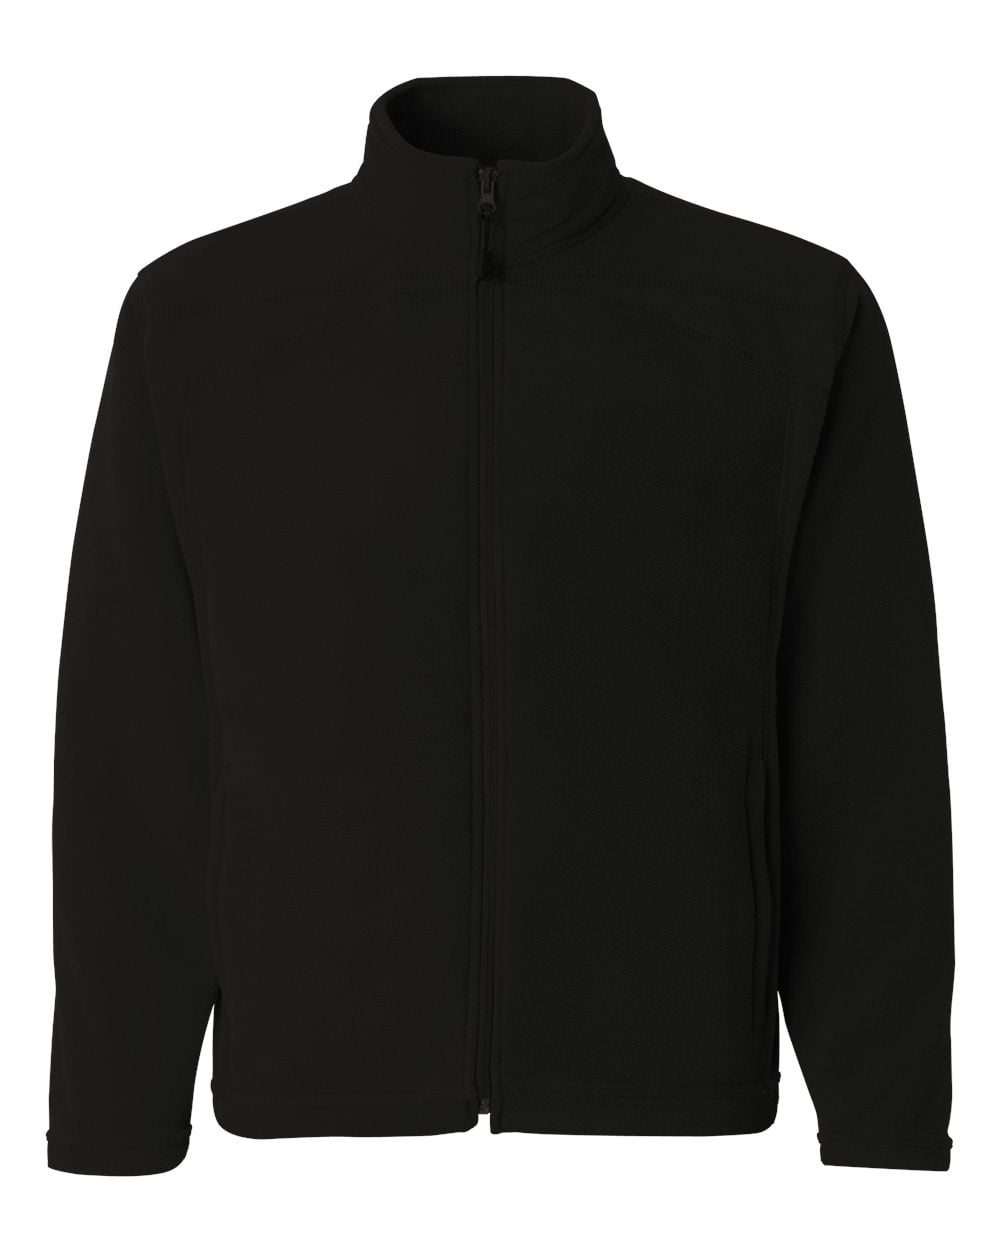 Colorado Clothing - Colorado Clothing 5289 Men's Microfleece Jacket ...